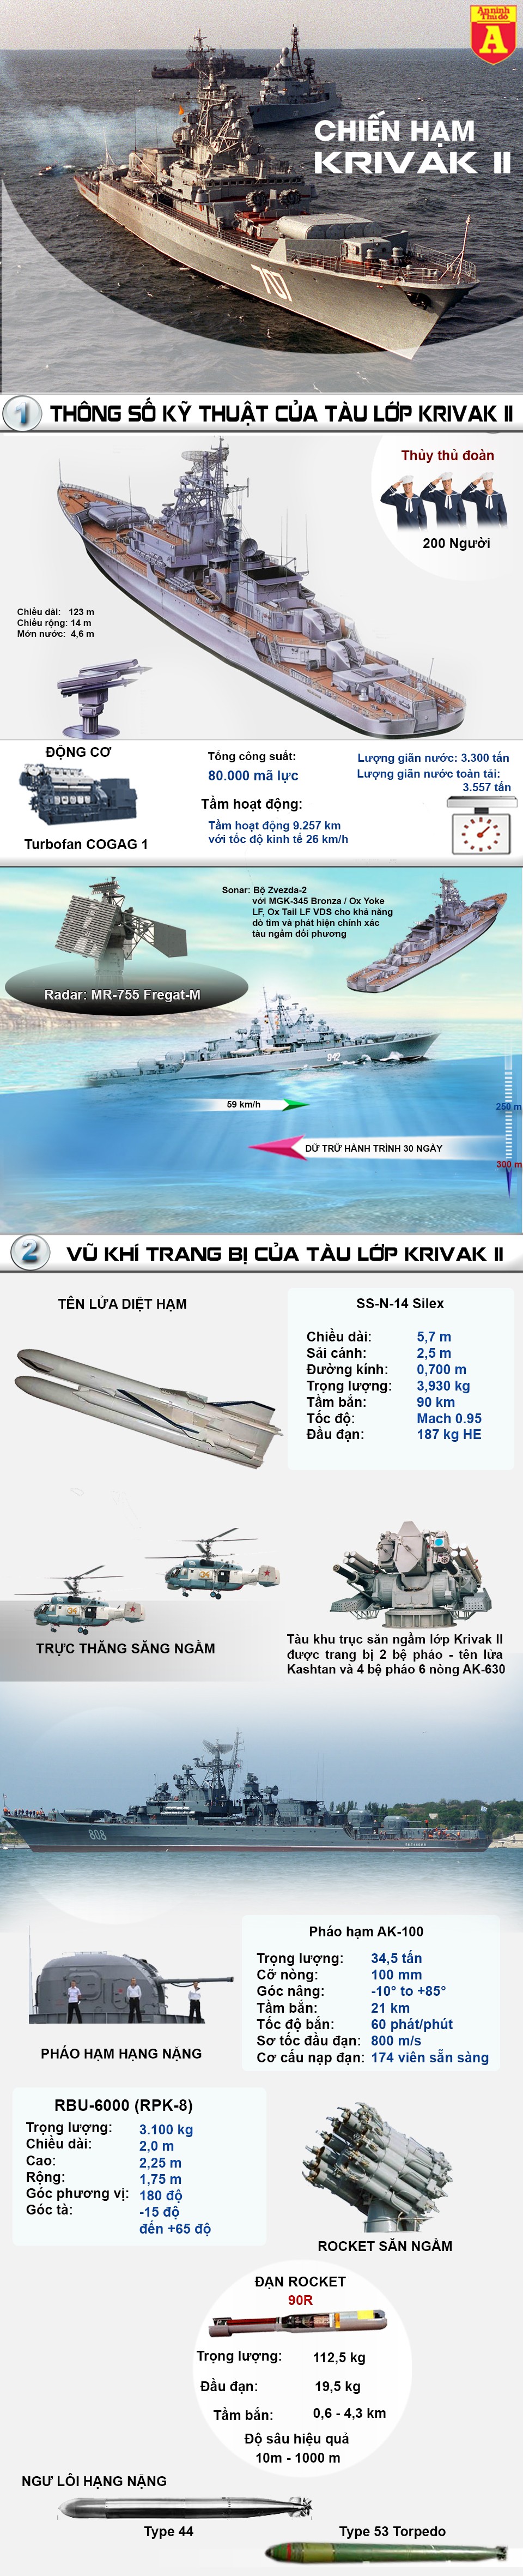 [Infographic] Vũ trang đầy mình, chiến hạm săn ngầm của Nga đến Syria để nhắm ai? ảnh 2